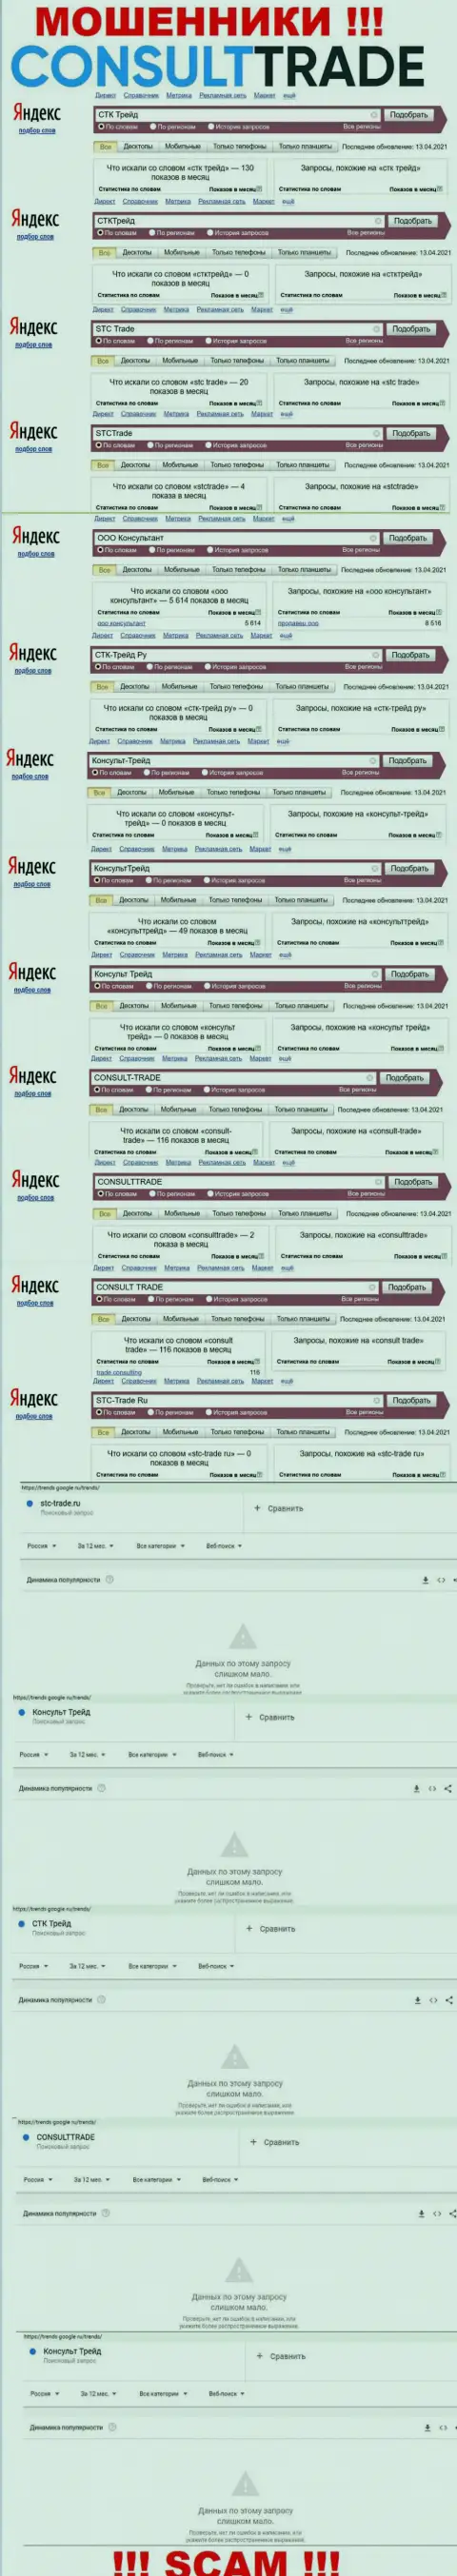 Скрин результата онлайн-запросов по противозаконно действующей организации CONSULT-TRADE